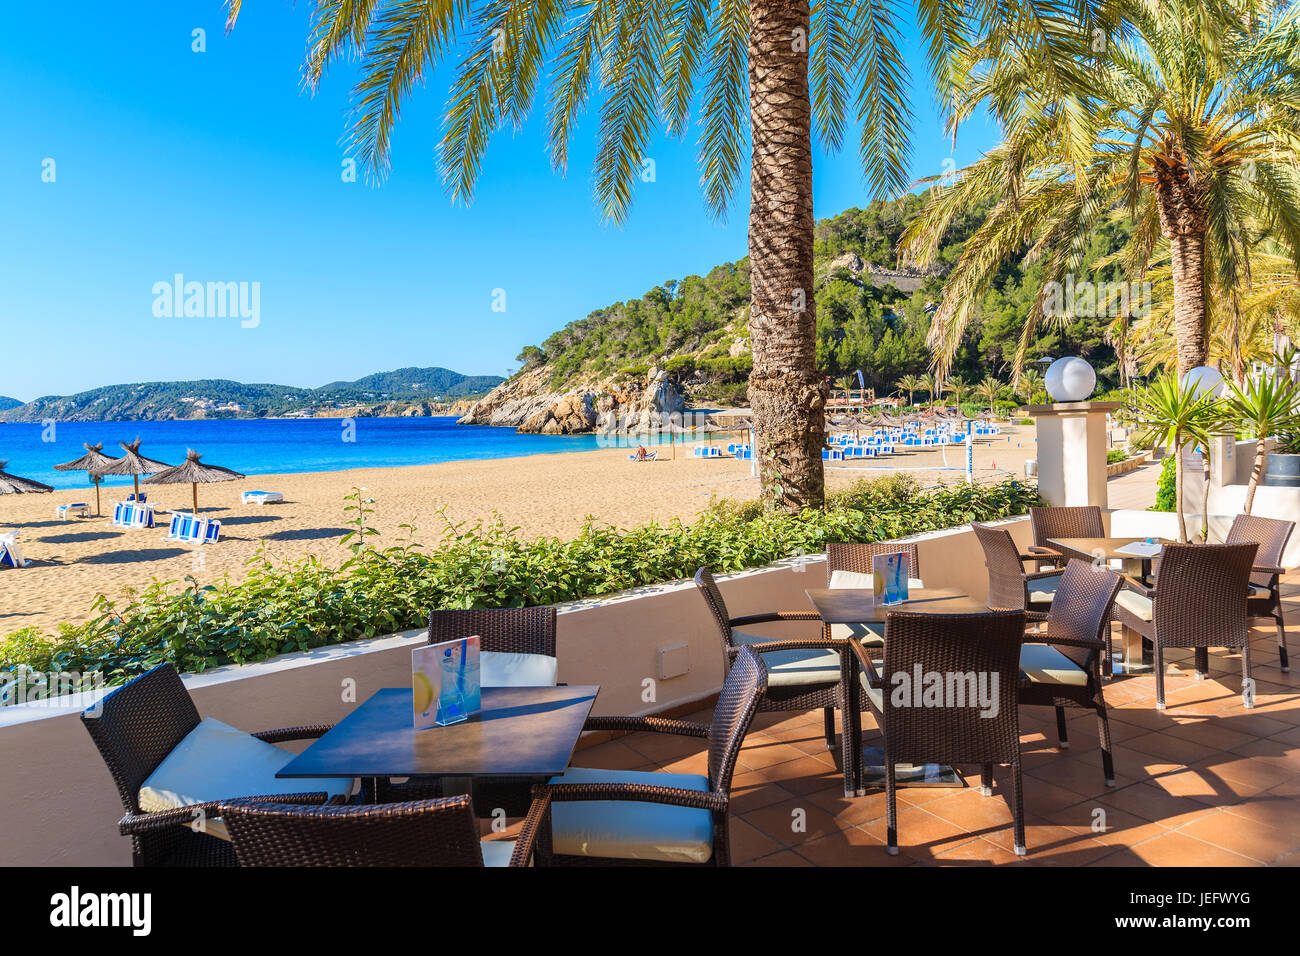 Bucht von CALA SAN VICENTE, Insel IBIZA - 19. Mai 2017: Hotel Bartische am Strand mit Palmen in Cala San Vicente Bucht, Insel Ibiza, Spanien. Stockfoto